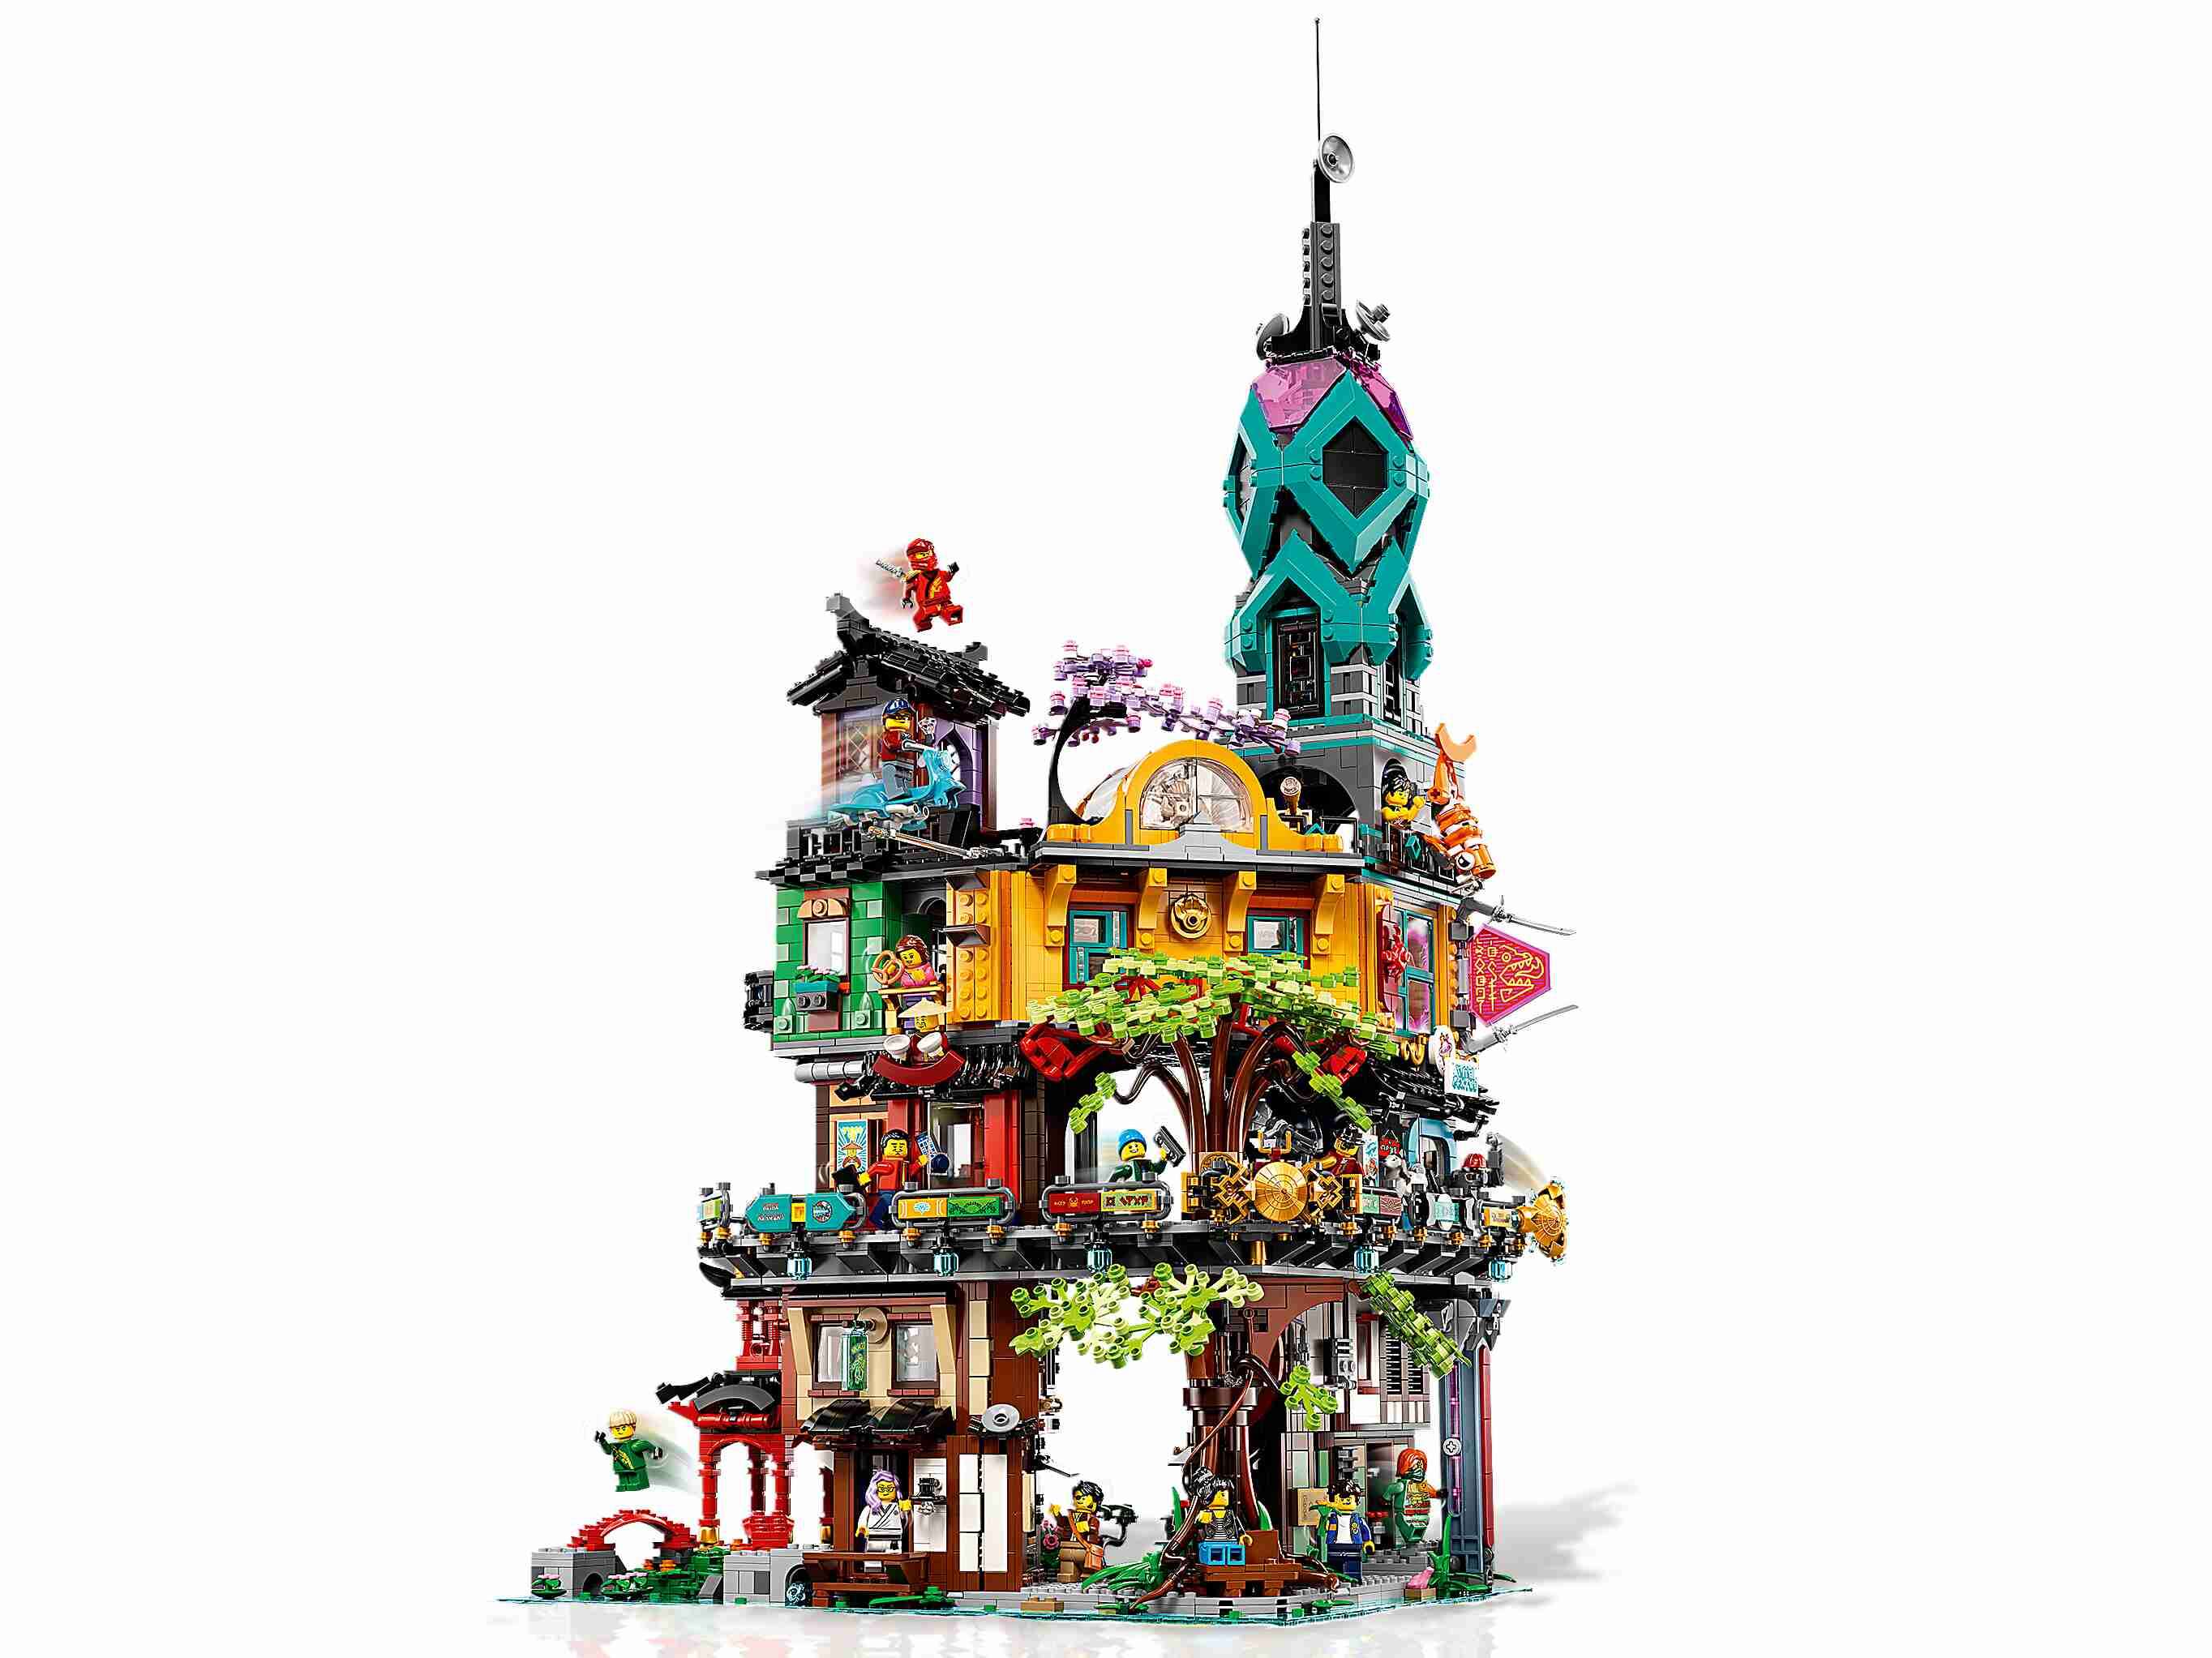 LEGO 71741 NINJAGO Die Gärten von NINJAGO City, 3 detailreiche Ebenen 19 Figuren